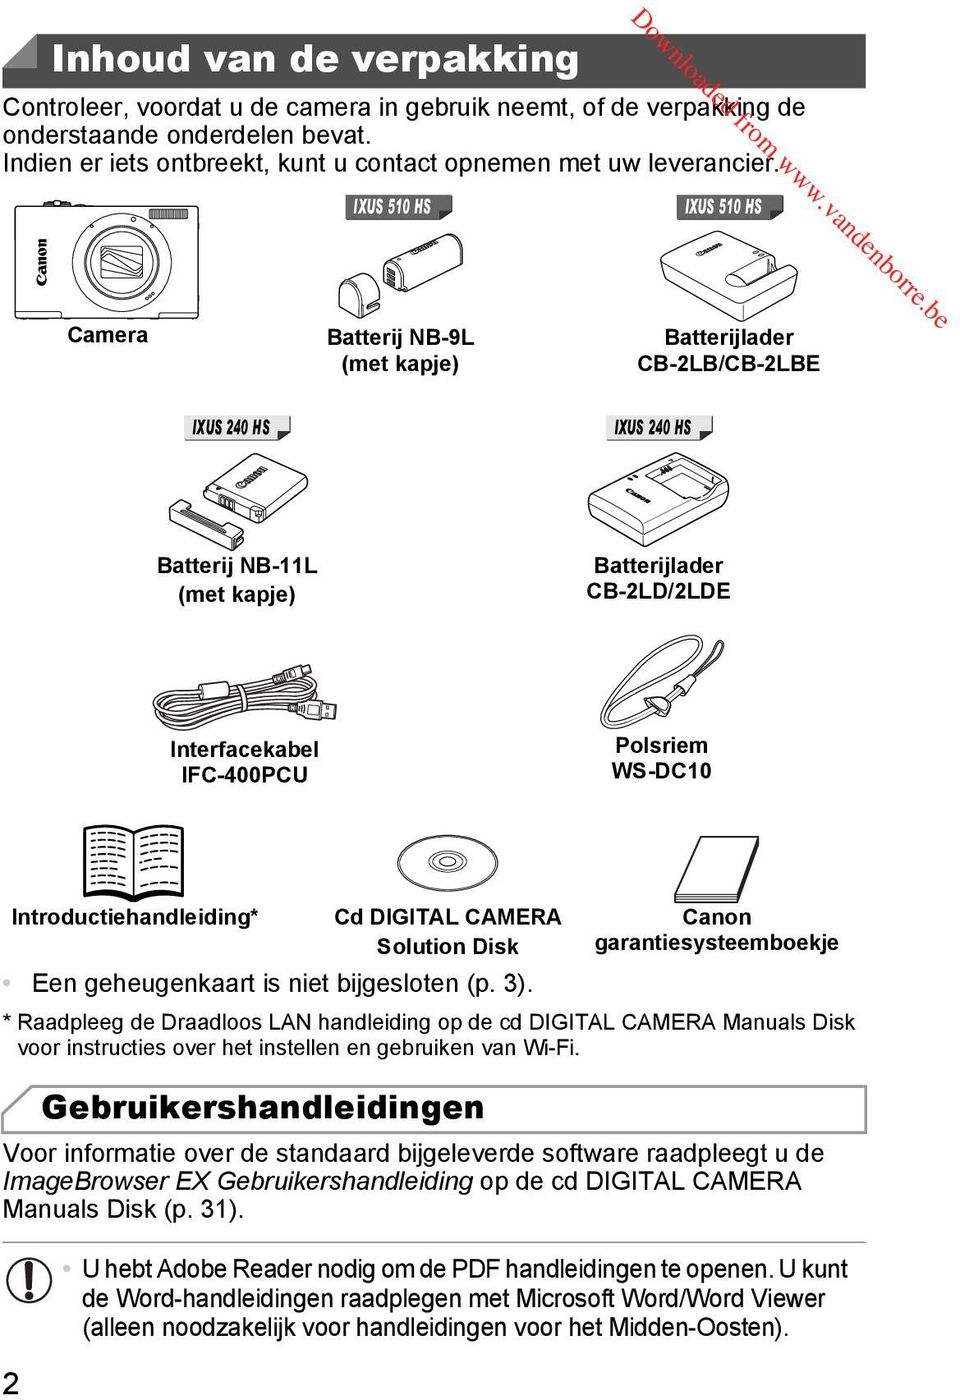 WS-DC10 Een geheugenkaart is niet bijgesloten (p. 3). * Raadpleeg de Draadloos LAN handleiding op de cd DIGITAL CAMERA Manuals Disk voor instructies over het instellen en gebruiken van Wi-Fi.